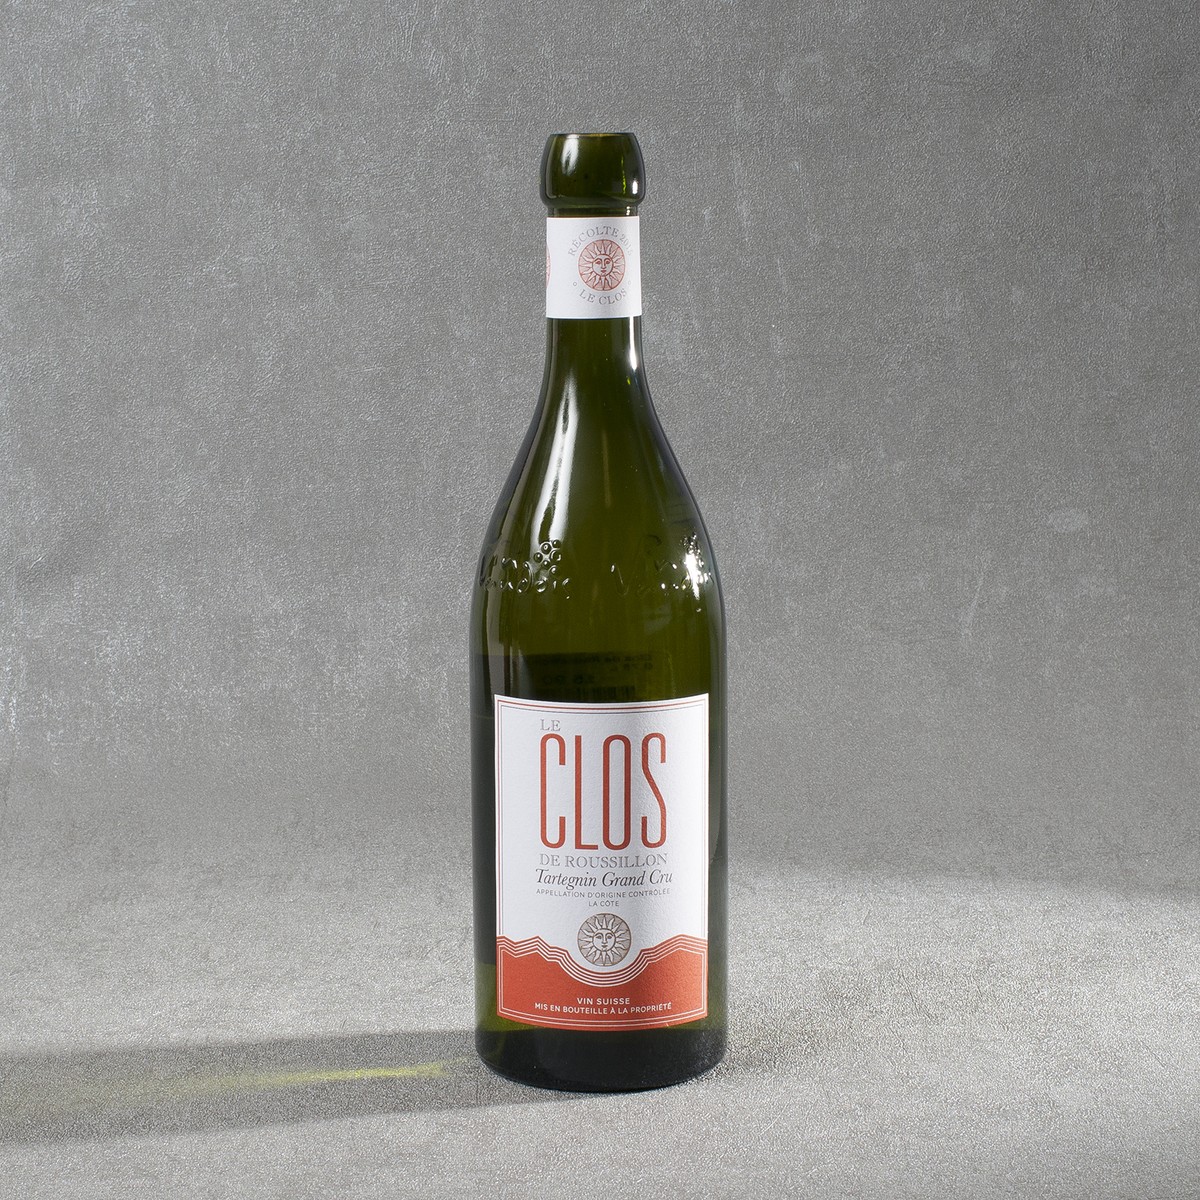   Clos de Roussillon Blanc. AOC La Côte 2015 75cl  0.75 L